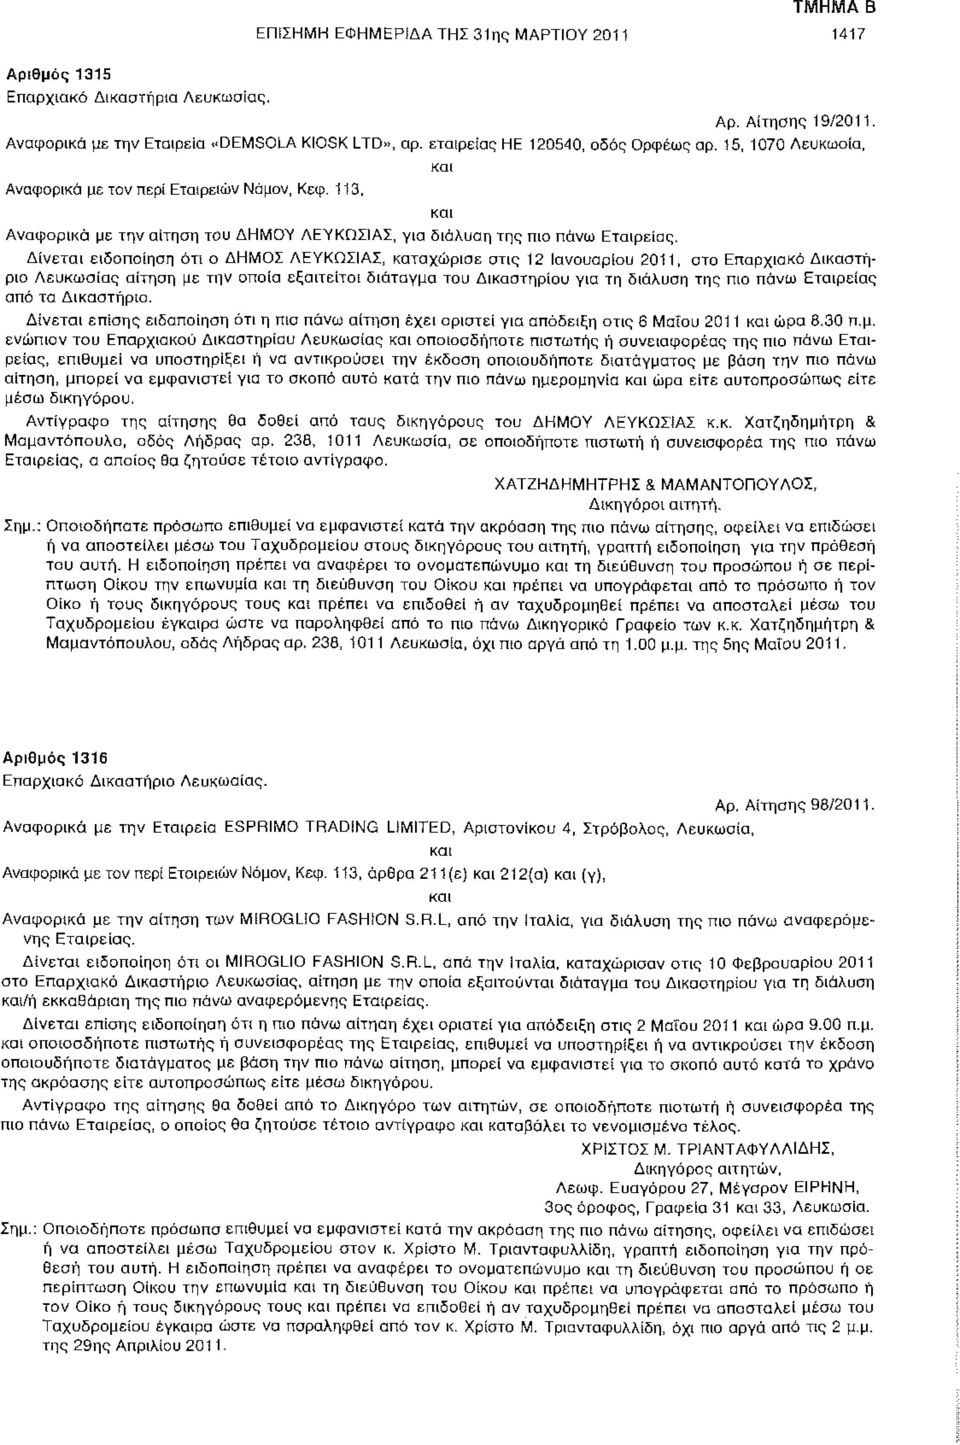 Δίνεται ειδοποίηση ότι ο ΔΗΜΟΣ ΛΕΥΚΩΣΙΑΣ, καταχώρισε στις 12 Ιανουαρίου 2011, στο Επαρχιακό Δικαστήριο Λευκωσίας αίτηση με την οποία εξαιτείται διάταγμα του Δικαστηρίου για τη διάλυση της πιο πάνω